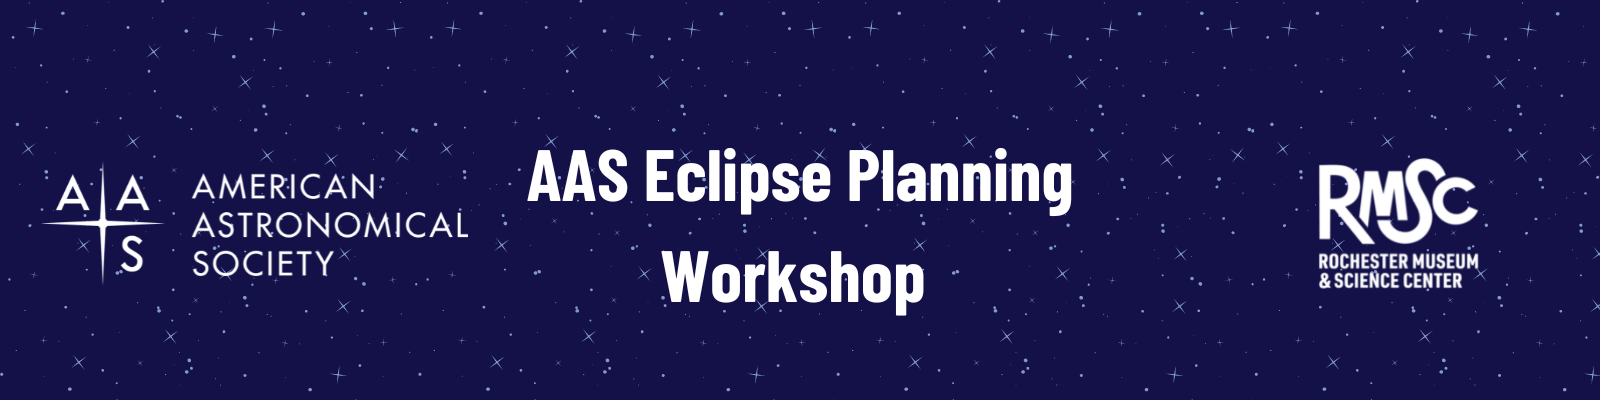 RMSC Hosting AAS Eclipse Planning Workshop